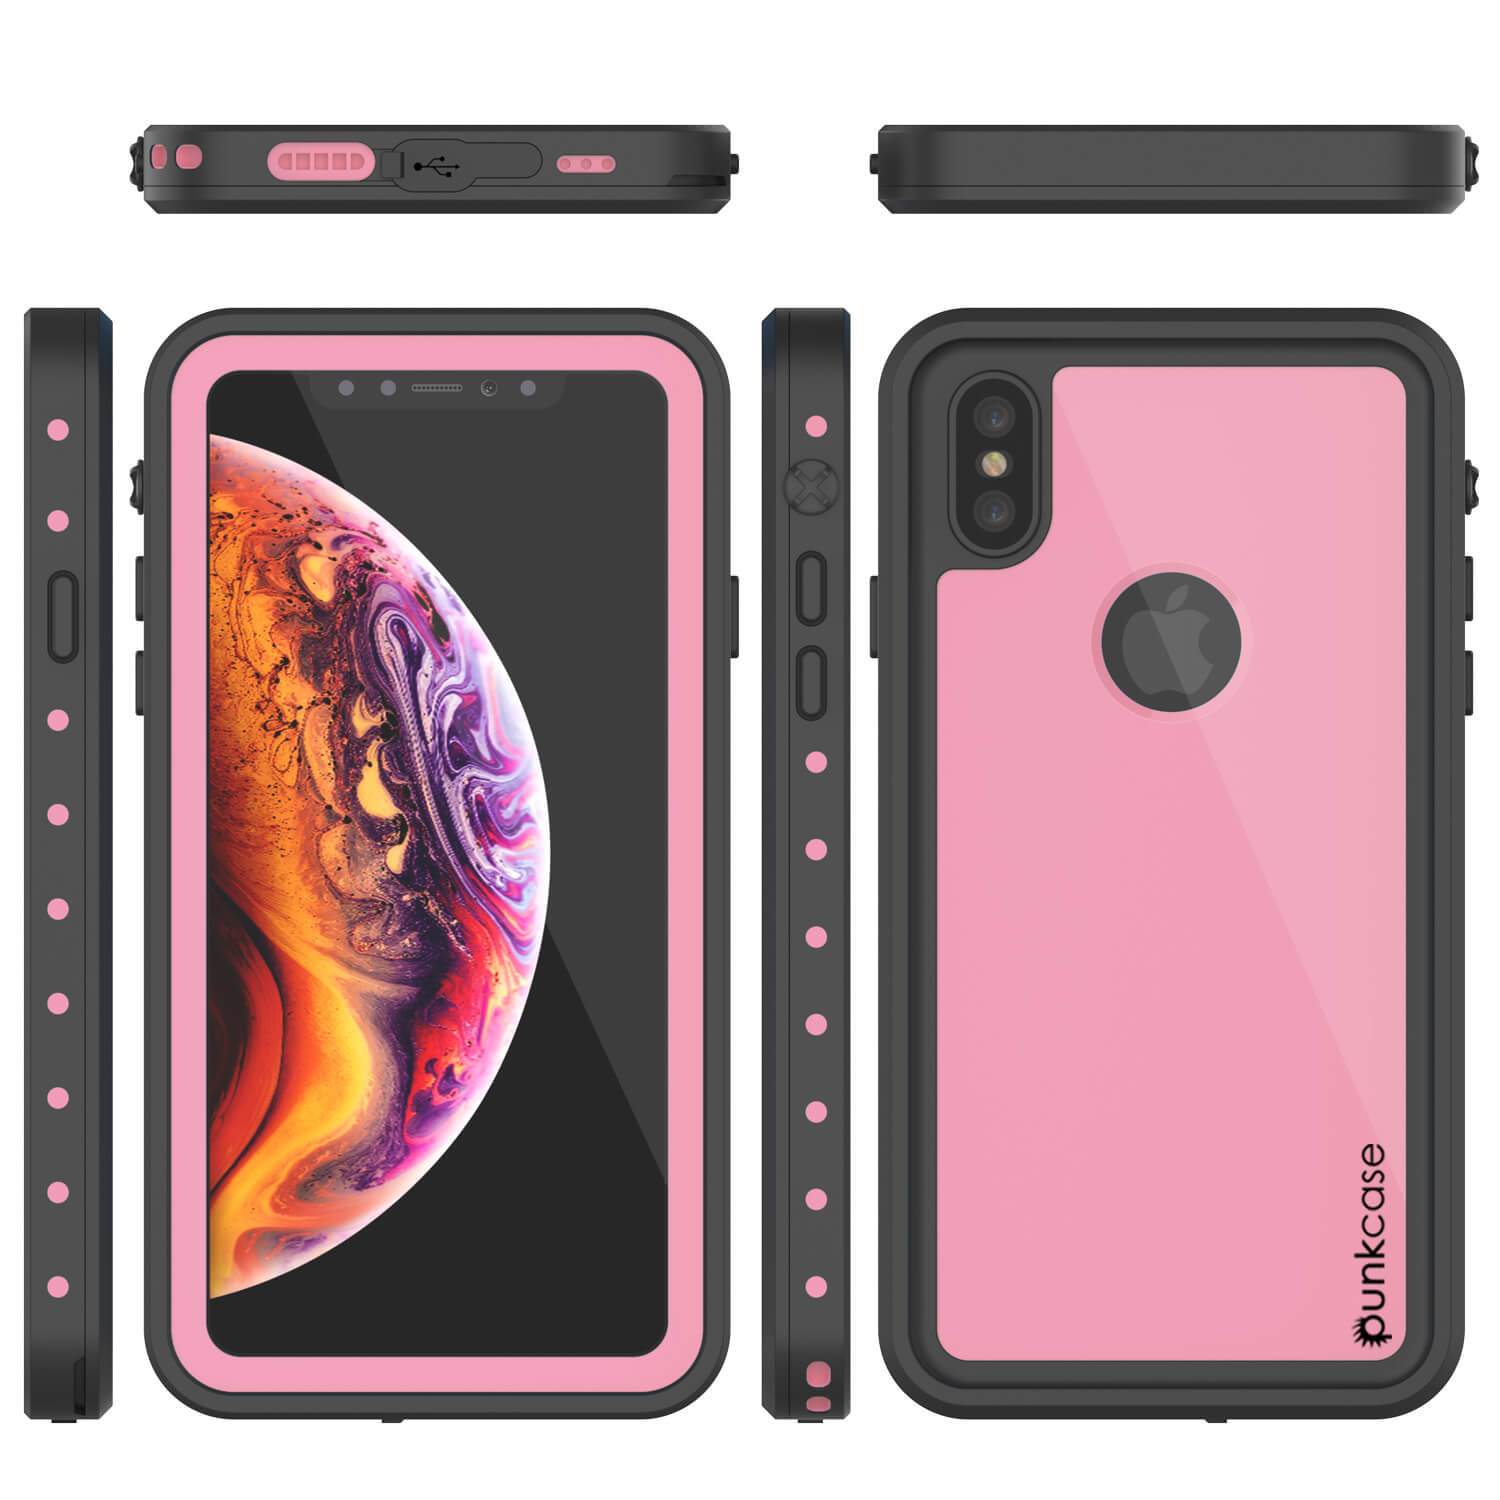 iPhone XS Waterproof IP68 Case, Punkcase [Pink] [StudStar Series] [Slim Fit] [Dirtproof]